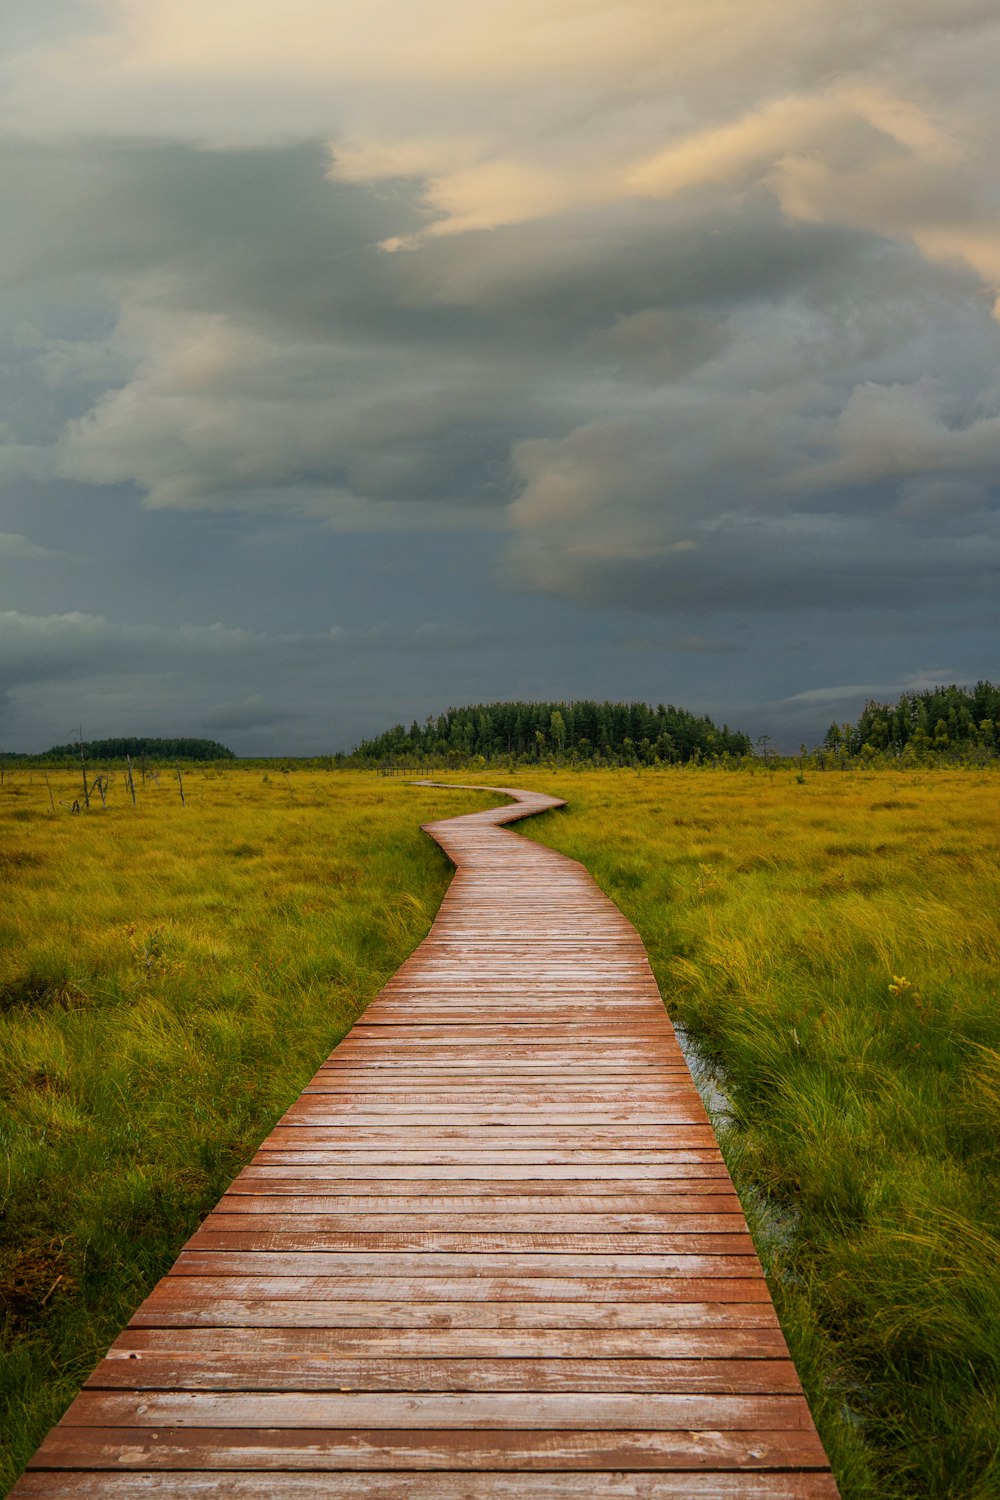 a wooden walkway through a field